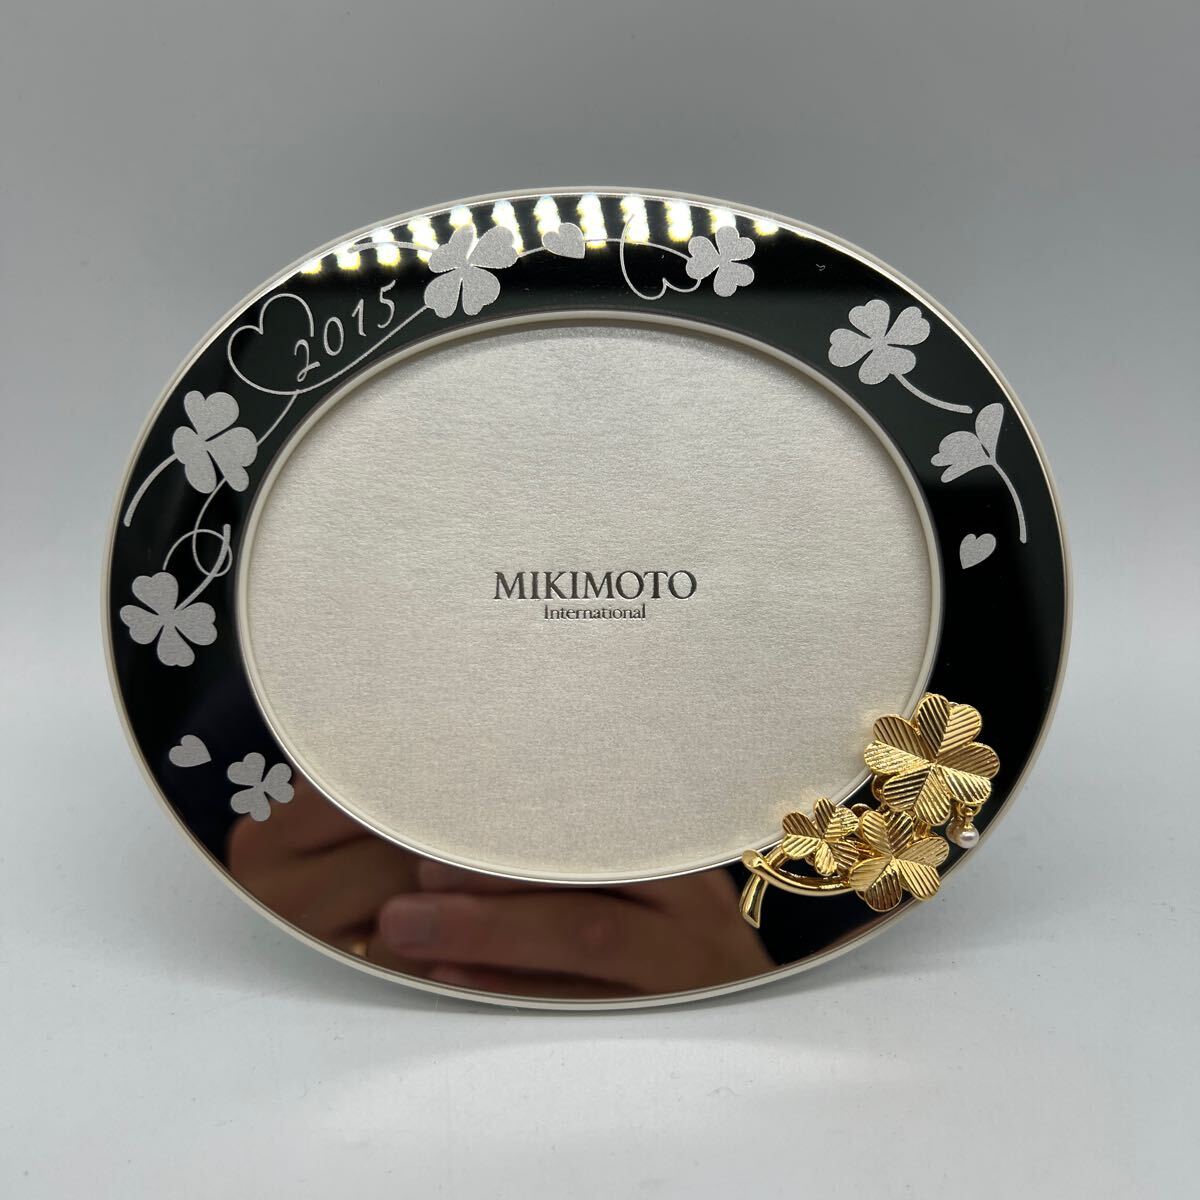  Mikimoto фоторамка фото подставка фоторамка MIKIMOTO Mikimoto 